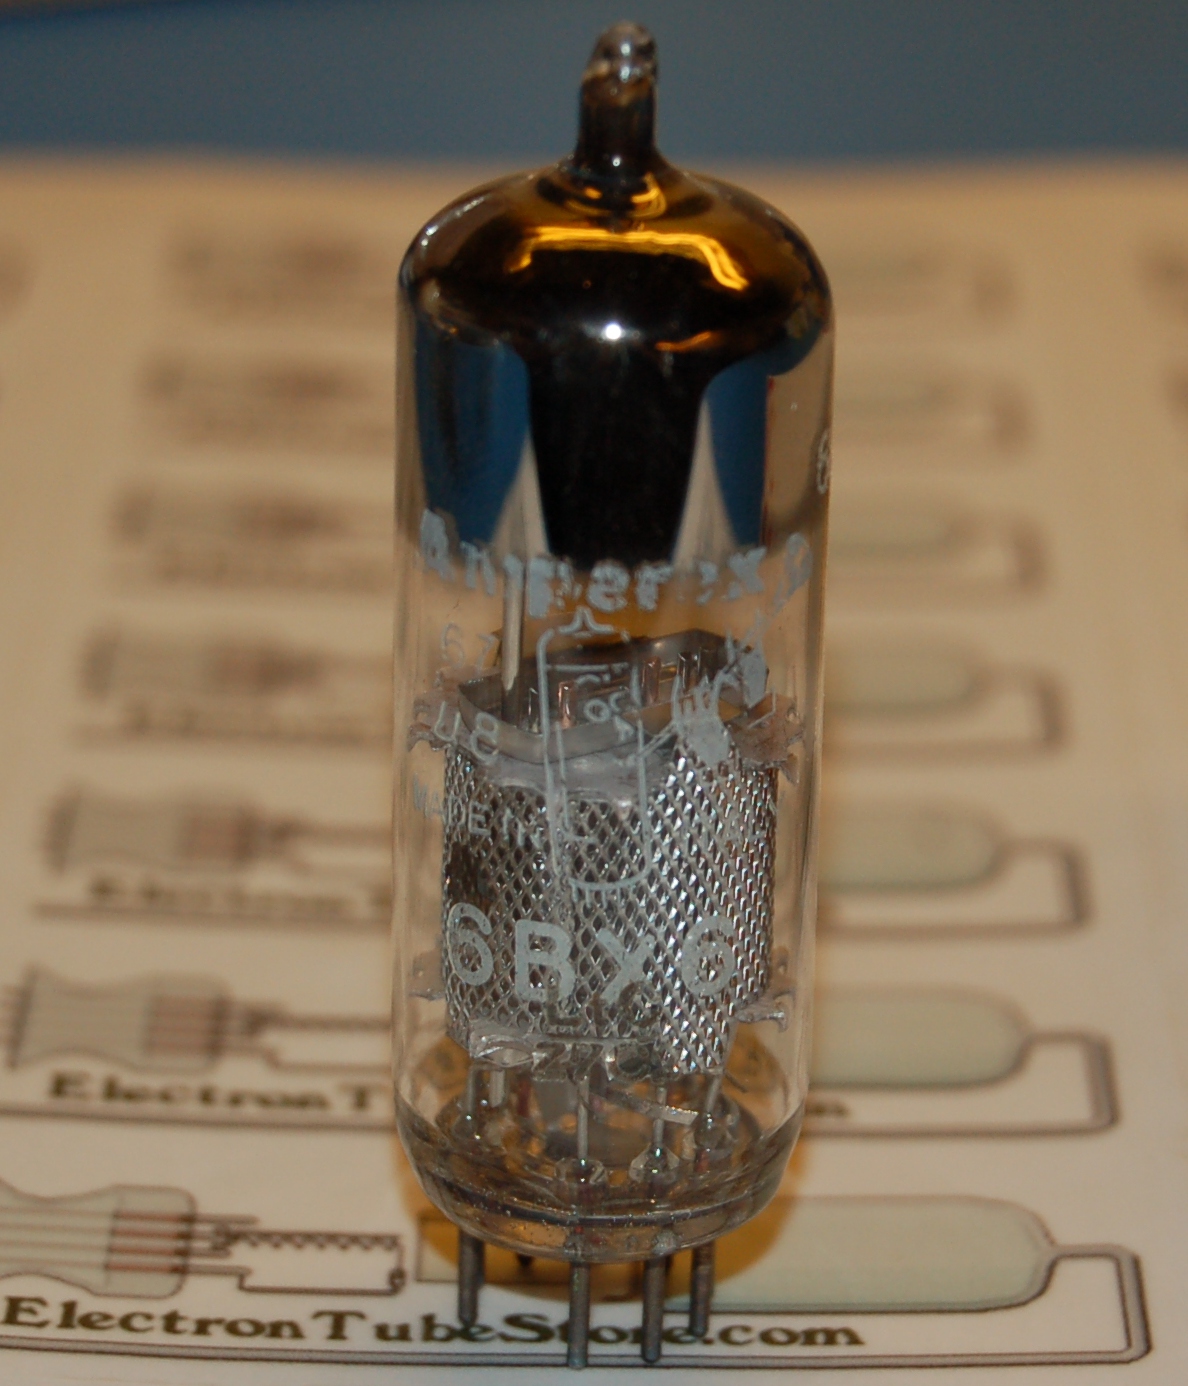 6BX6 pentode tube (Amperex Bugle Boy)